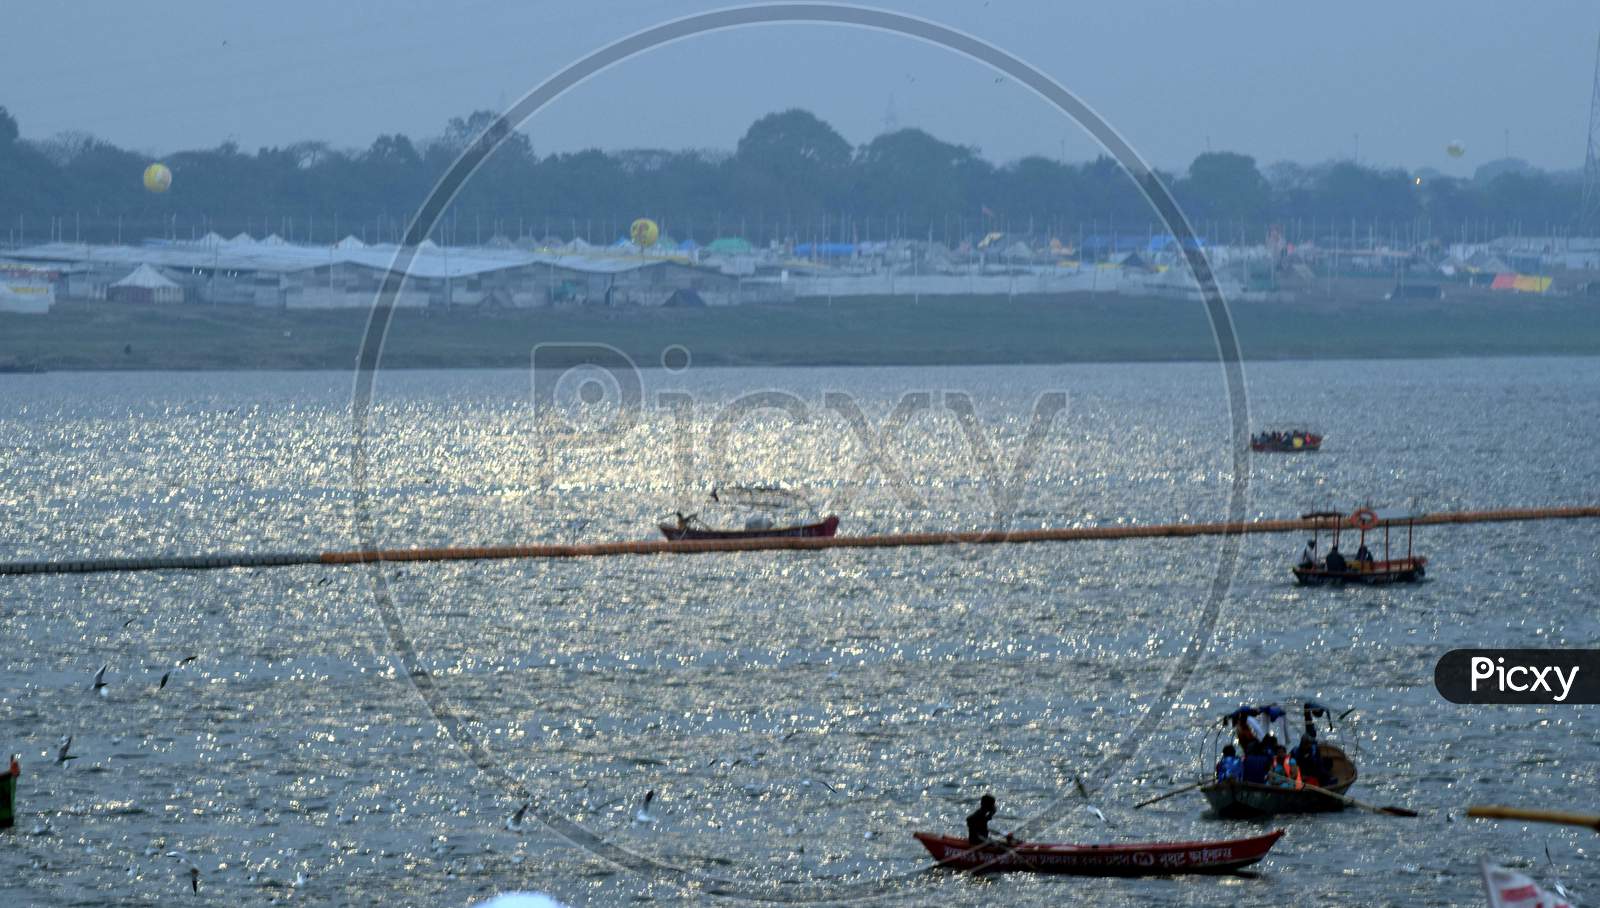 Tourists Boats On River Triveni Sangam At Prayagraj During Ardh kumbh Mela